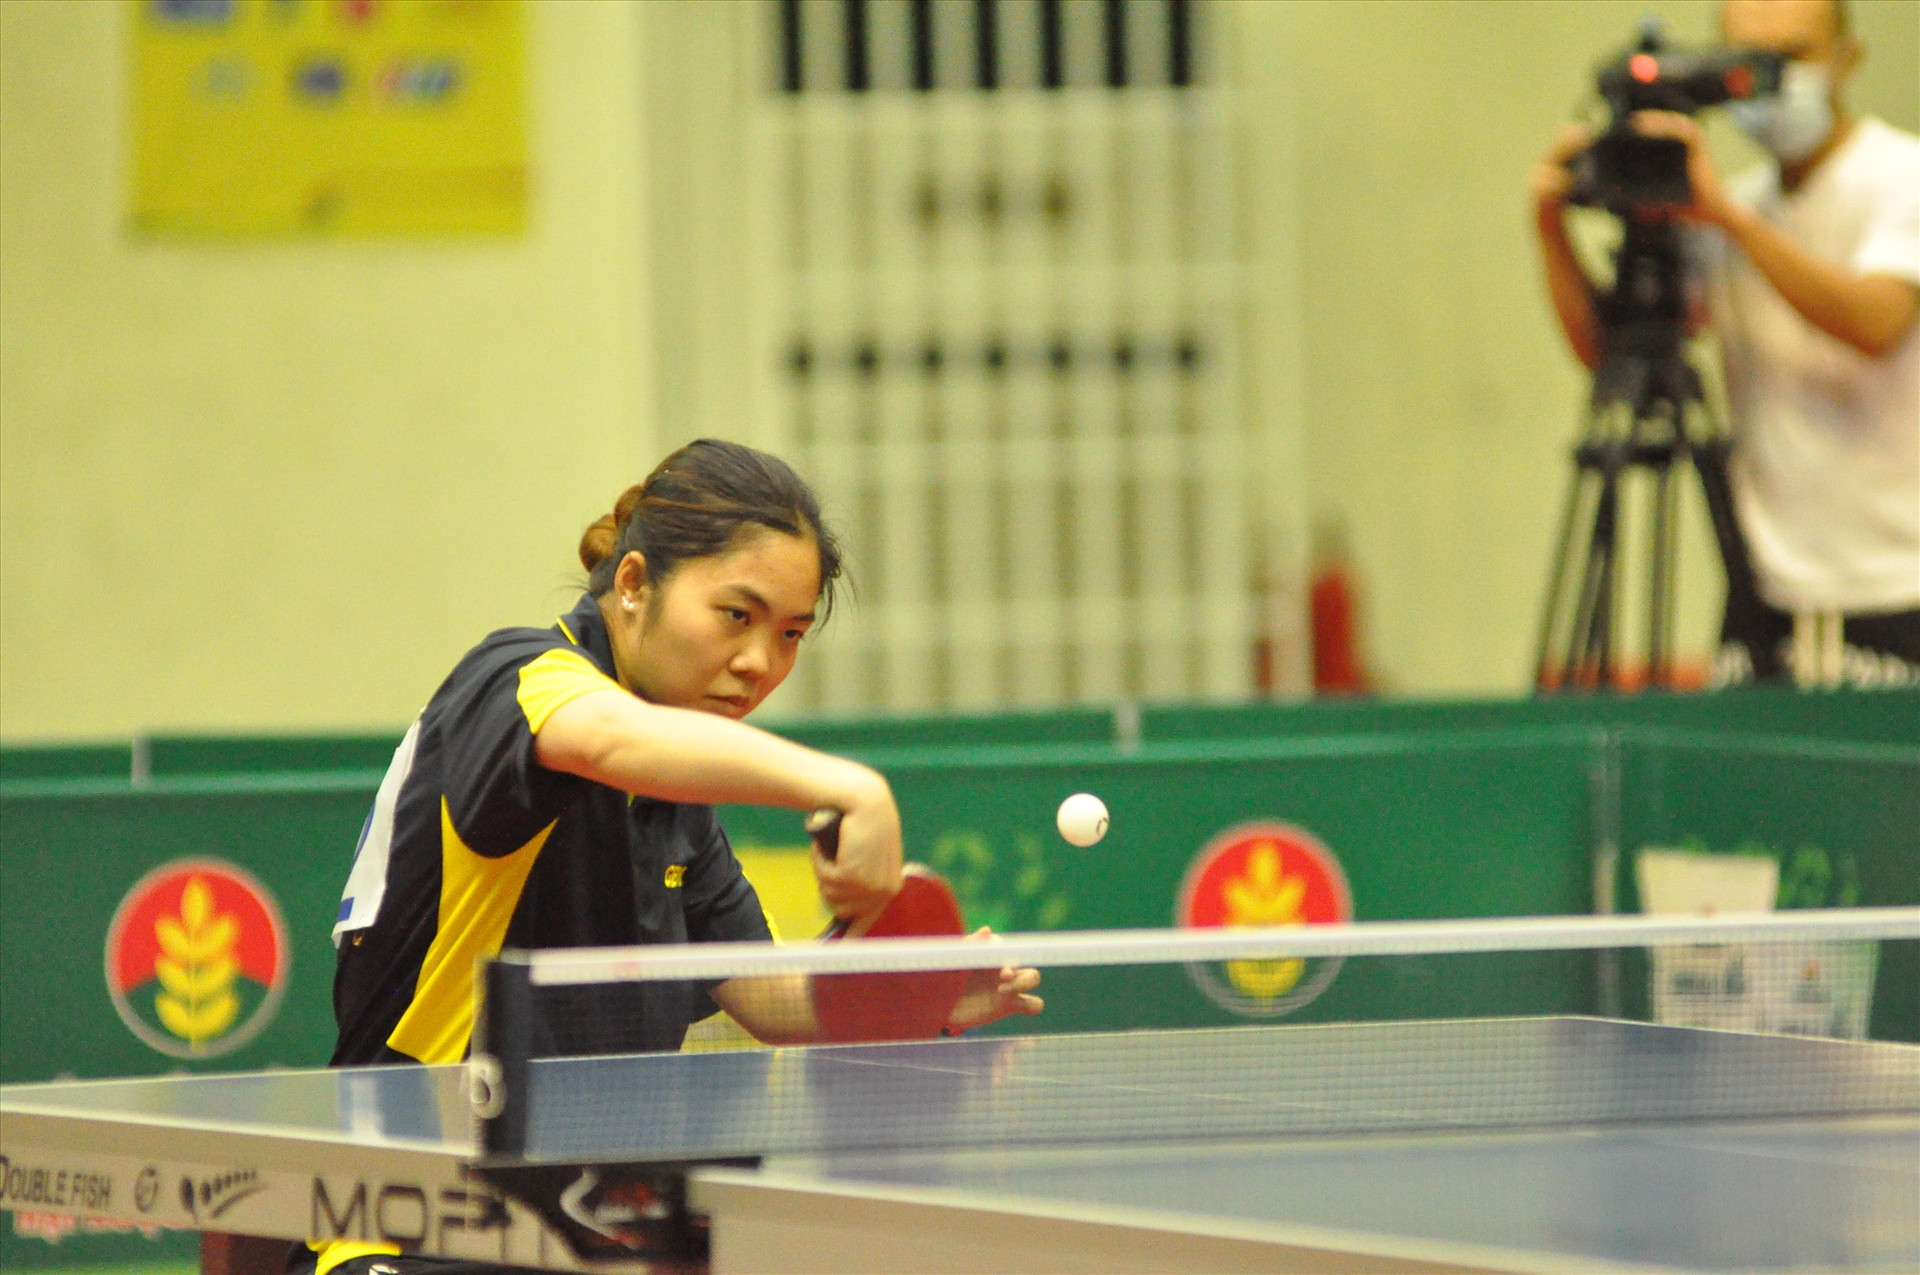 Dù chỉ giành giải nhì nhưng đây là giải đấu thành công của tay vợt Nguyễn Thị Kiều My (Công an). Ảnh: T.V